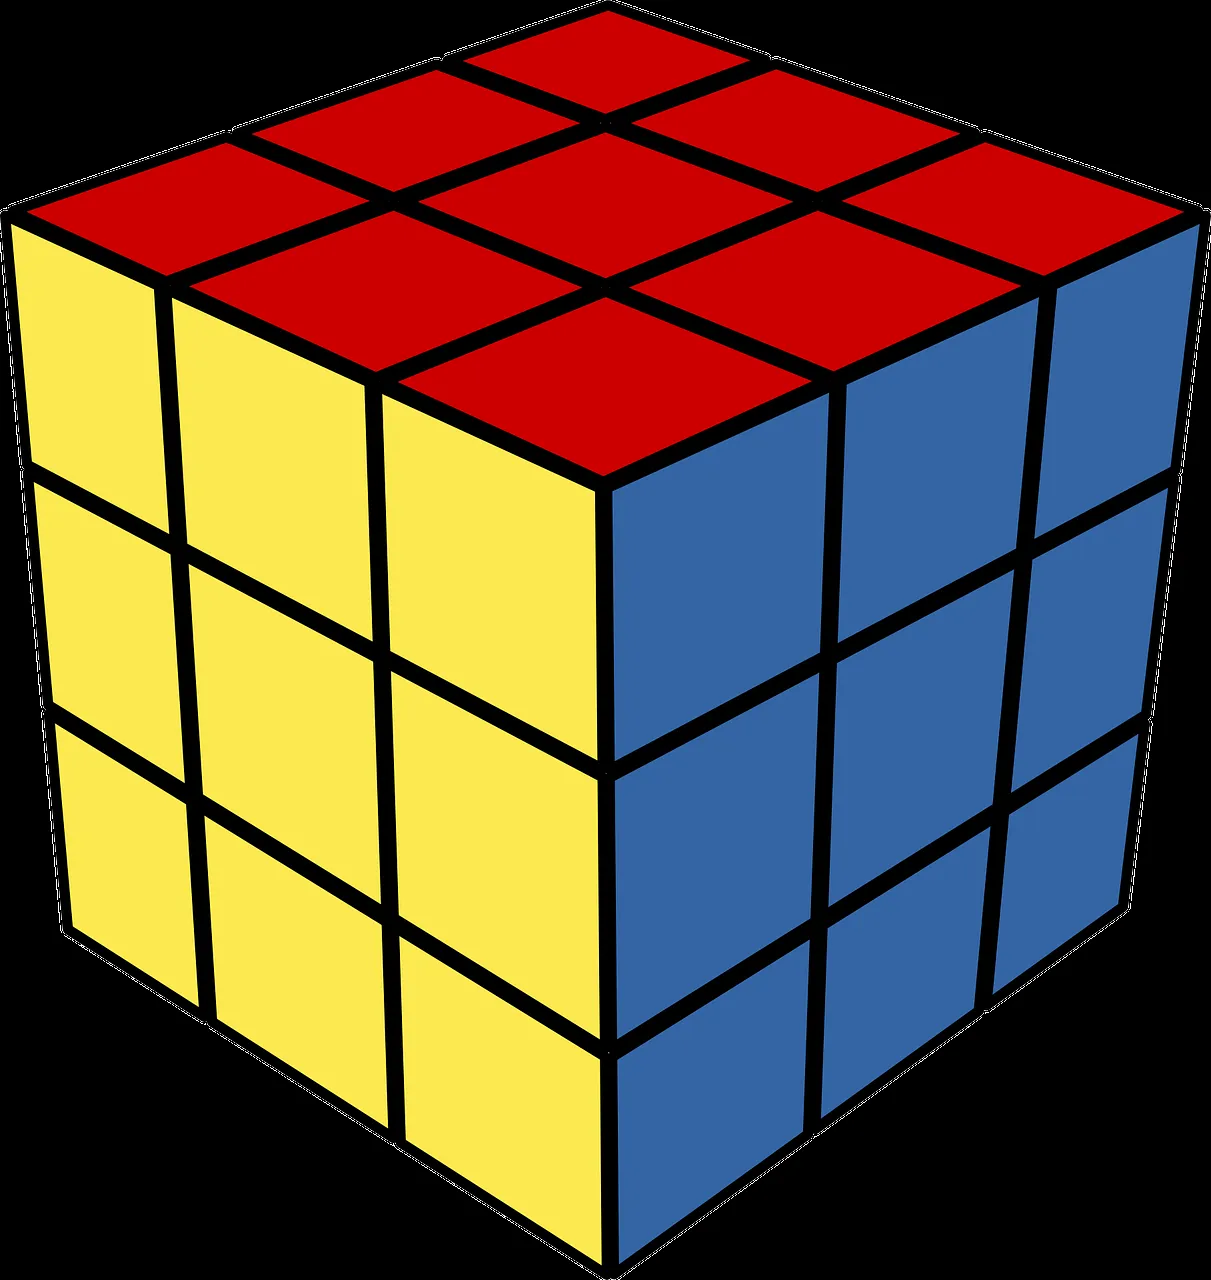 Cubo De Rubik Rompecabezas Juguete - Gráficos vectoriales gratis en Pixabay  - Pixabay